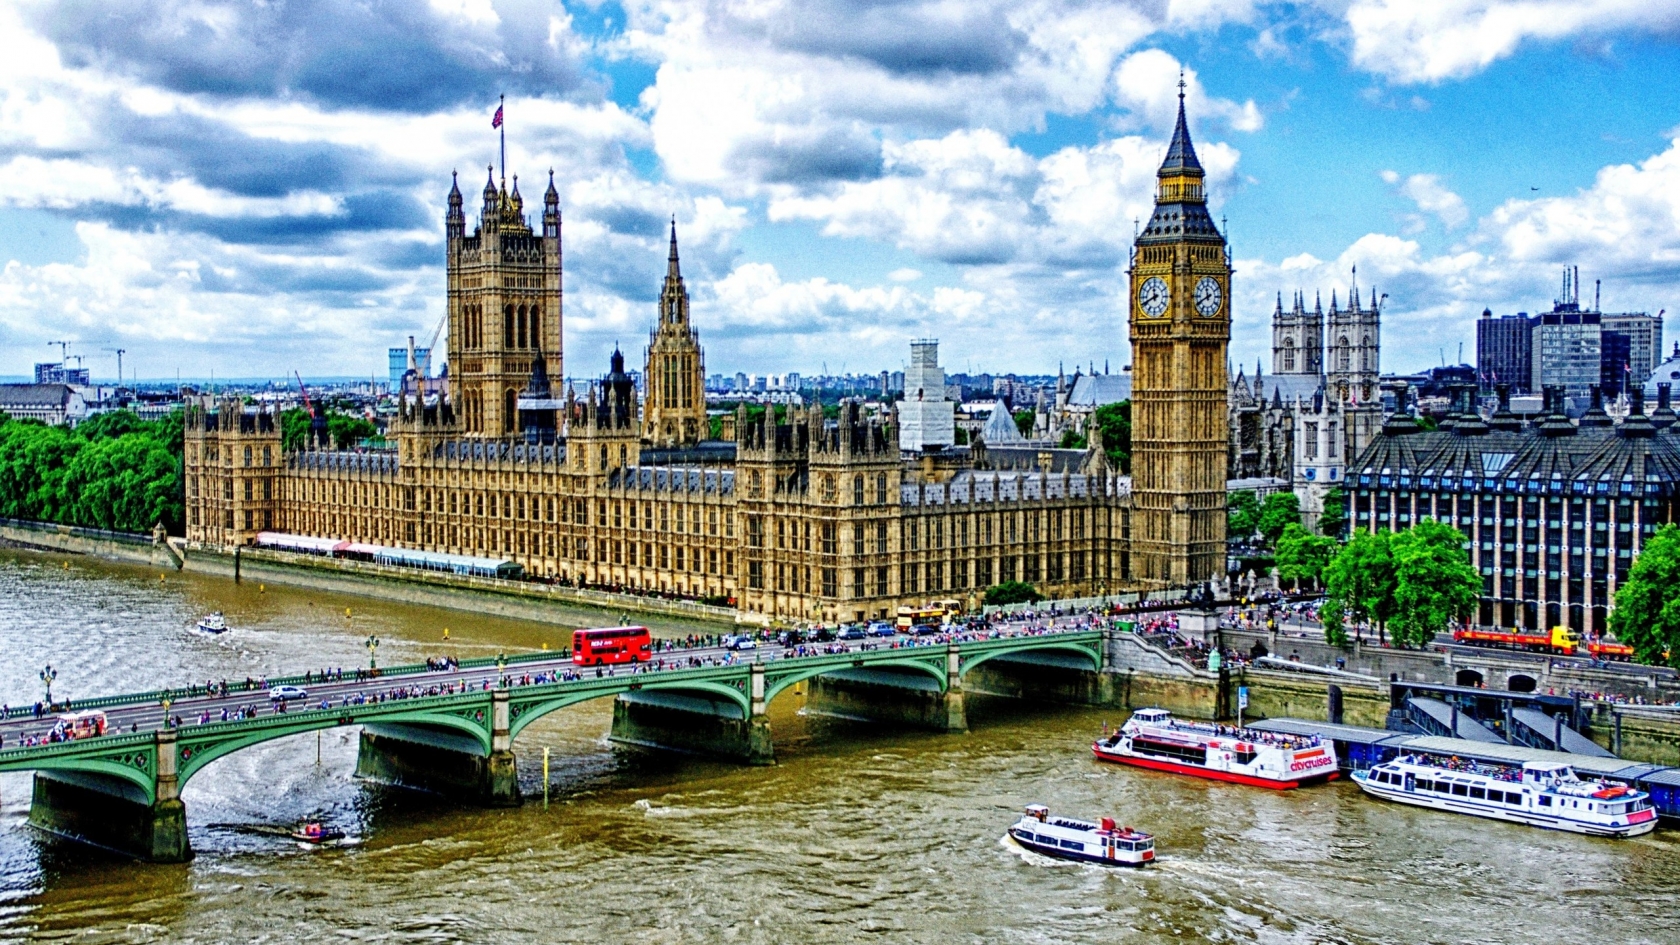 Westminster Bridge London for 1680 x 945 HDTV resolution